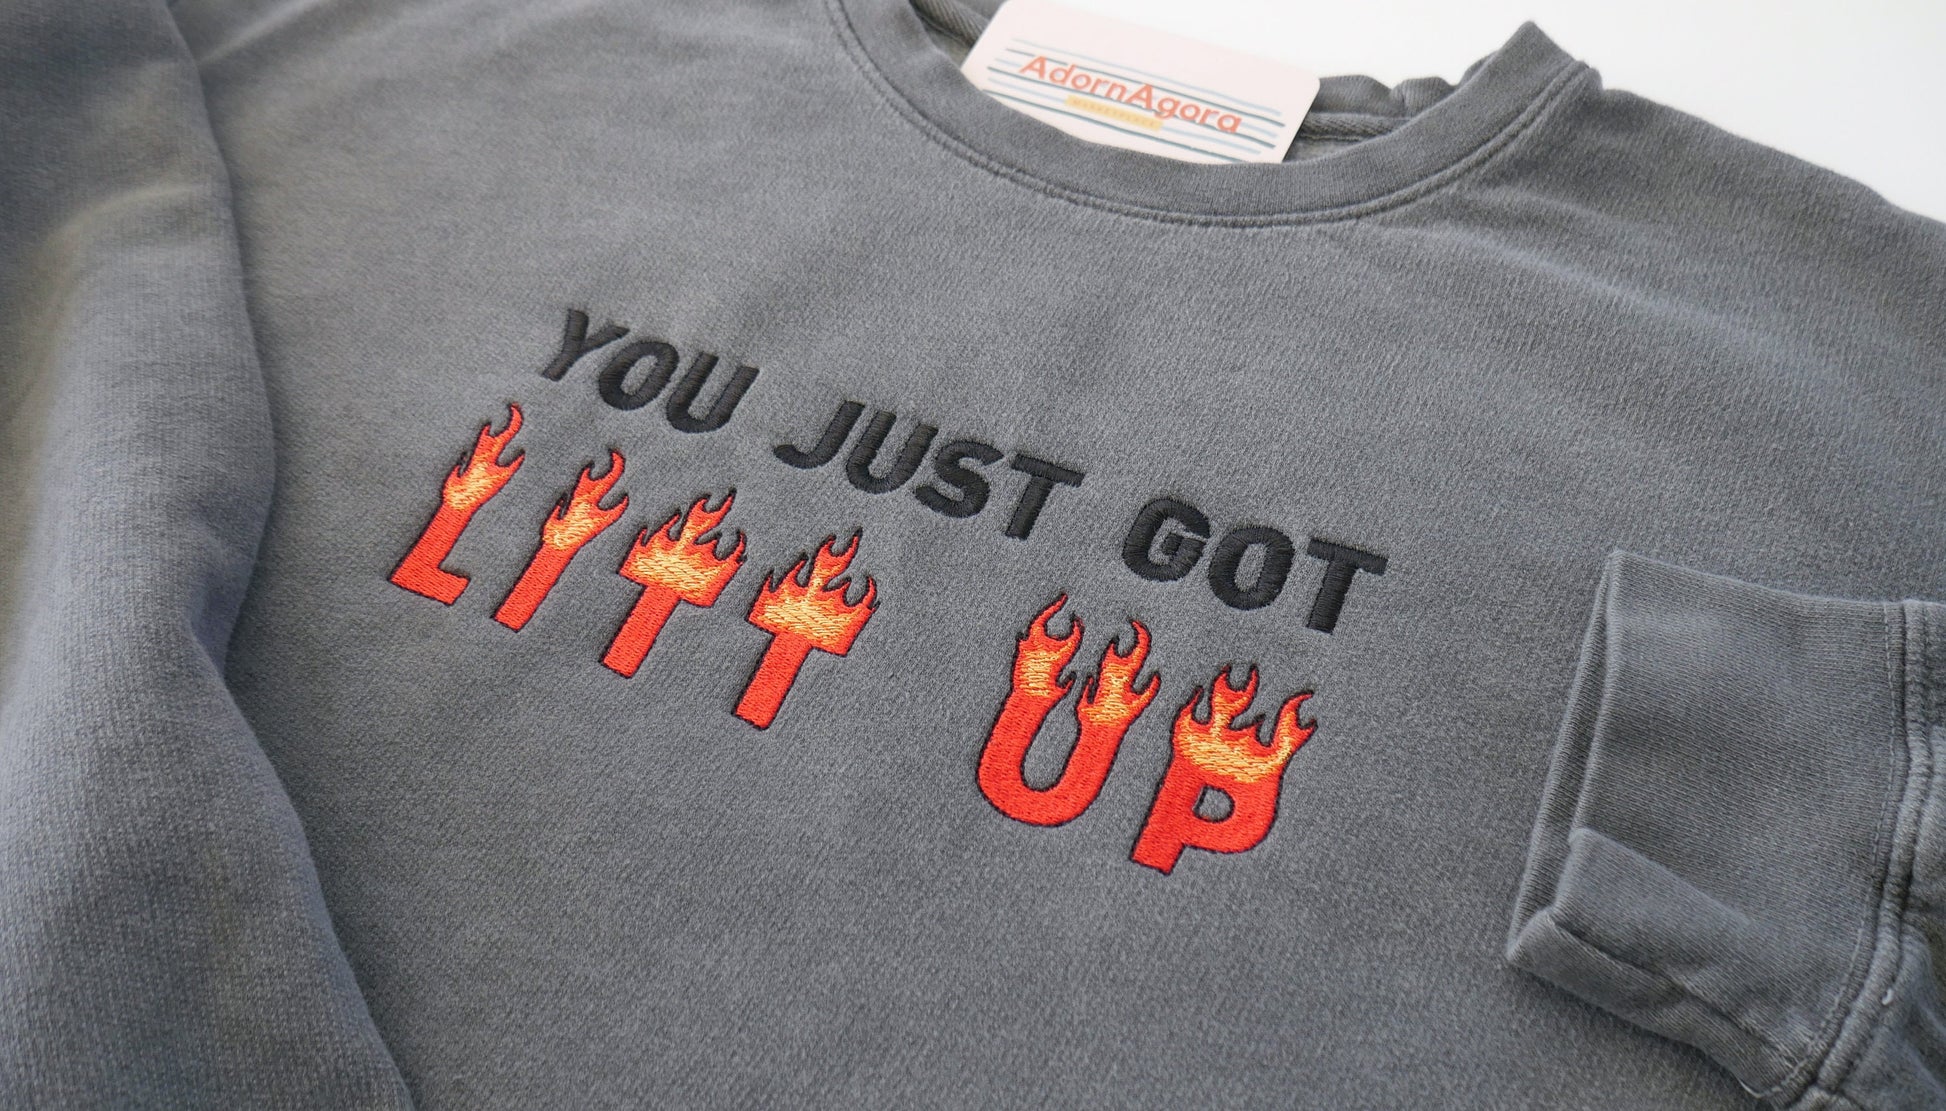 You just got LITT up : Louis Litt : Suits Quote | Lightweight Sweatshirt